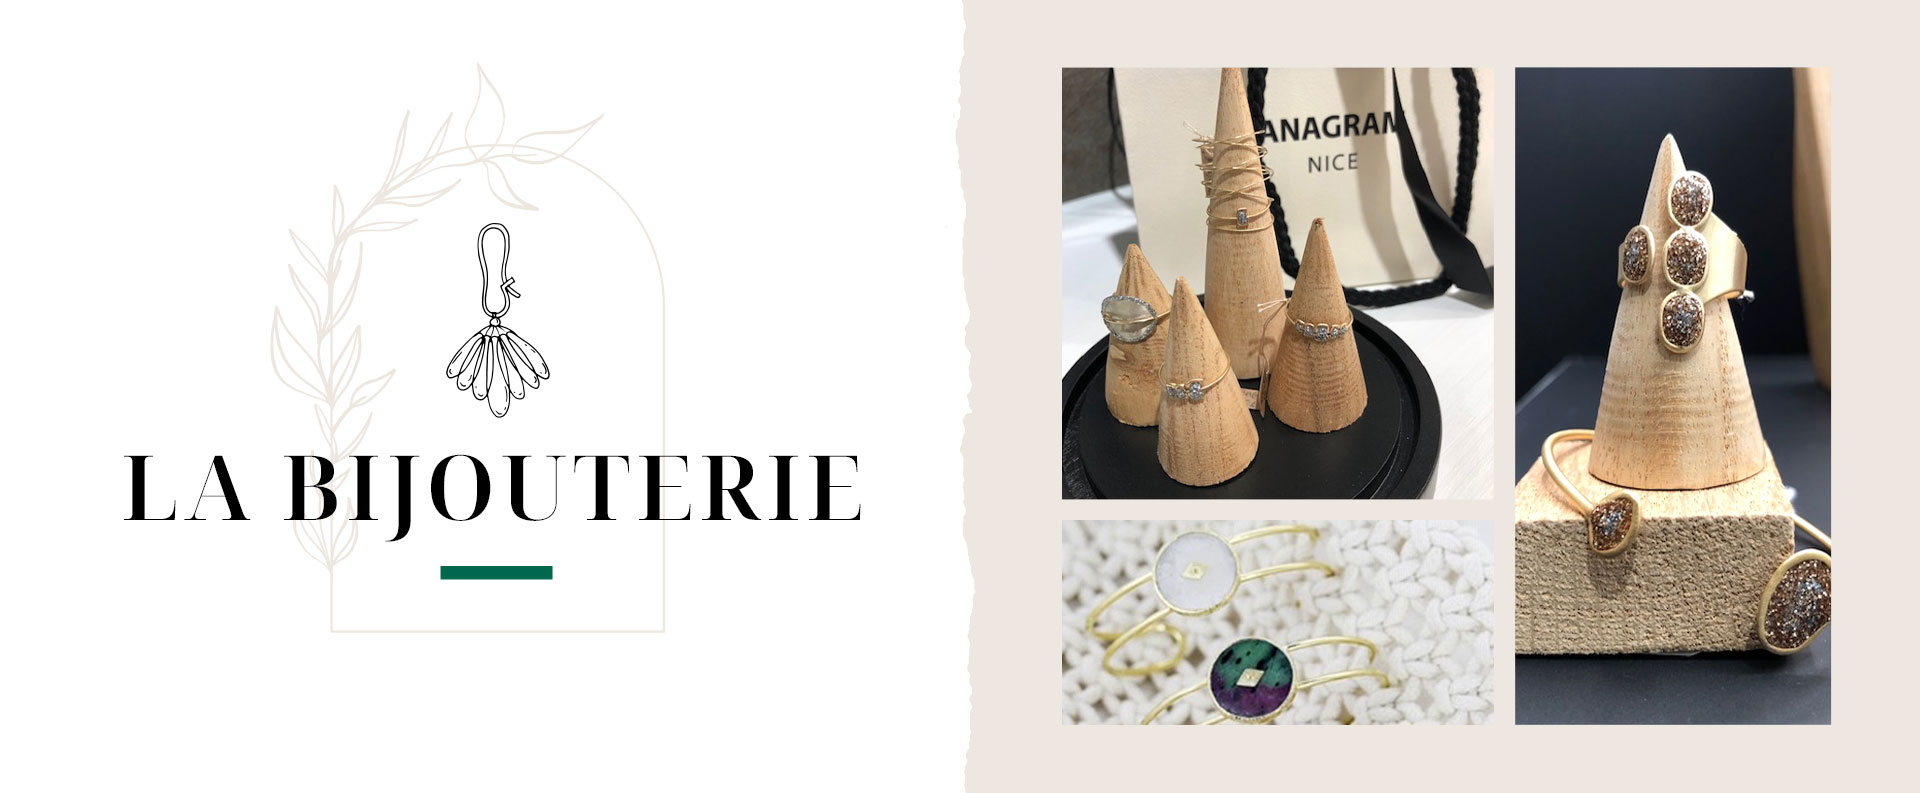 Collection de bijoux boutique Anagram à Nice